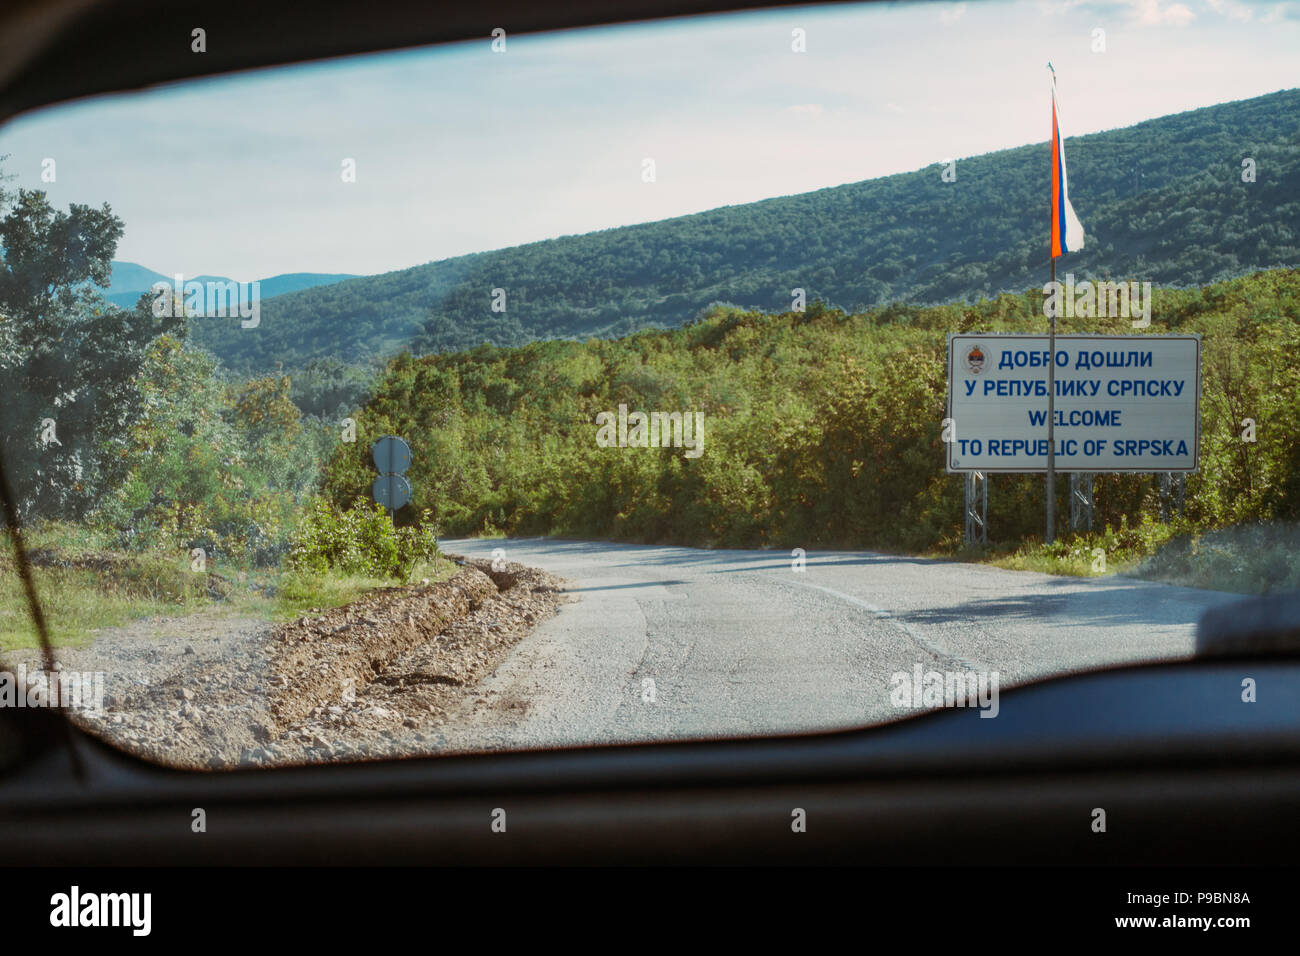 La vista desde la ventana trasera de un coche cruzando la frontera dejando a la República Srpska, en Bosnia y Herzegovina, y entrando en Montenegro Foto de stock